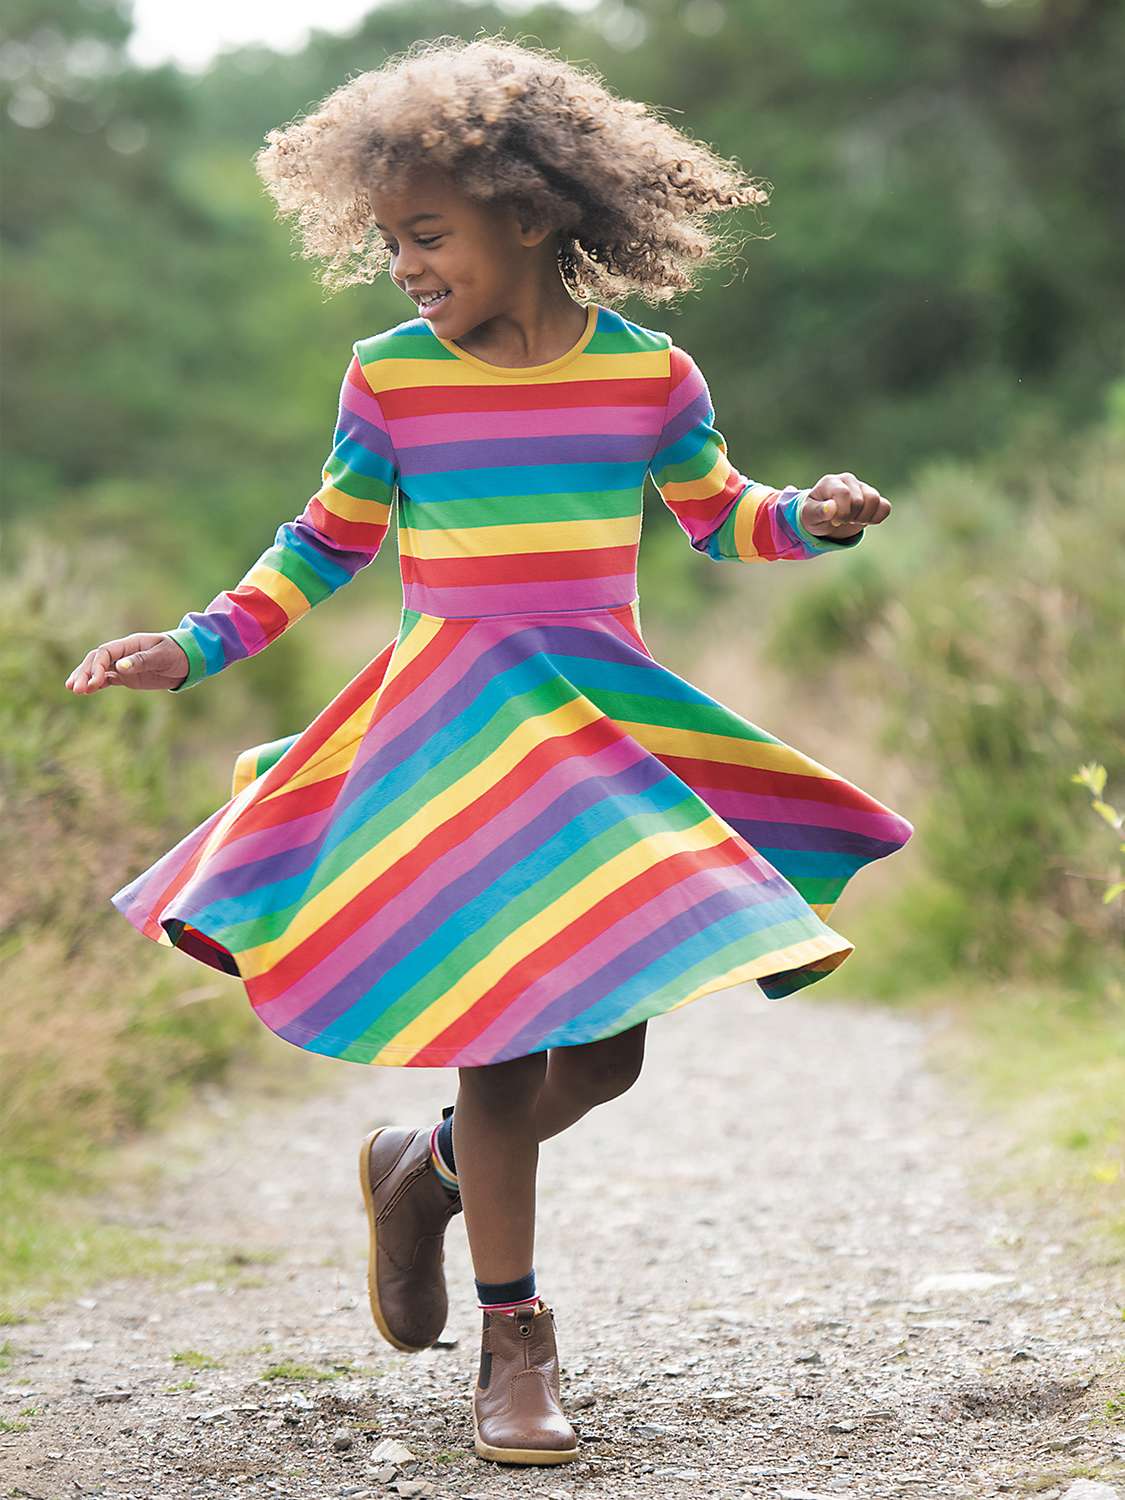 Buy Frugi Kids' Sofia Skater Dress, Multi Online at johnlewis.com